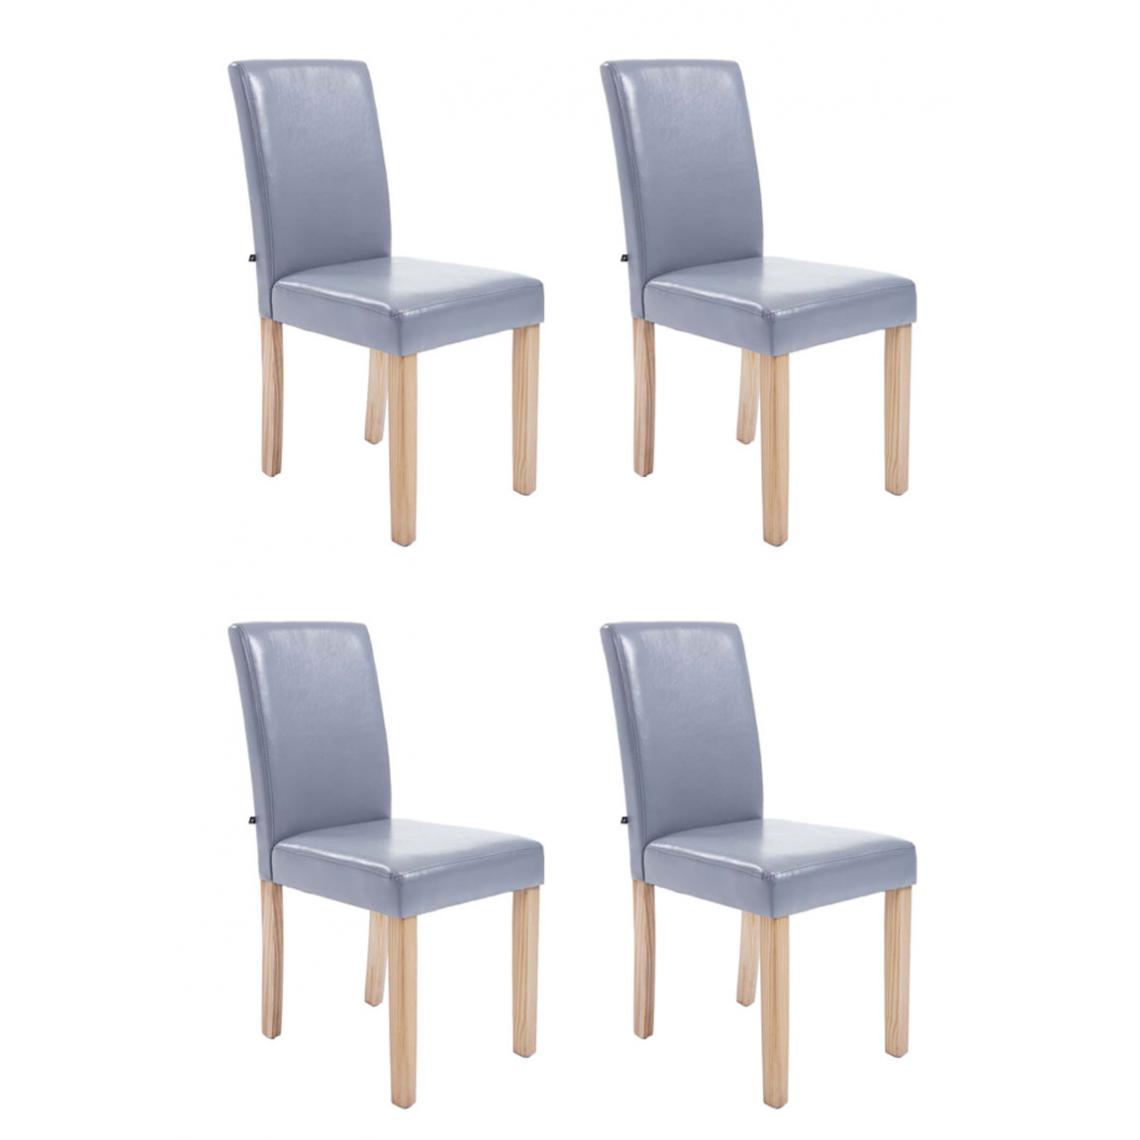 Icaverne - Magnifique Lot de 4 chaises de salle à manger serie Rabat natura couleur gris - Chaises